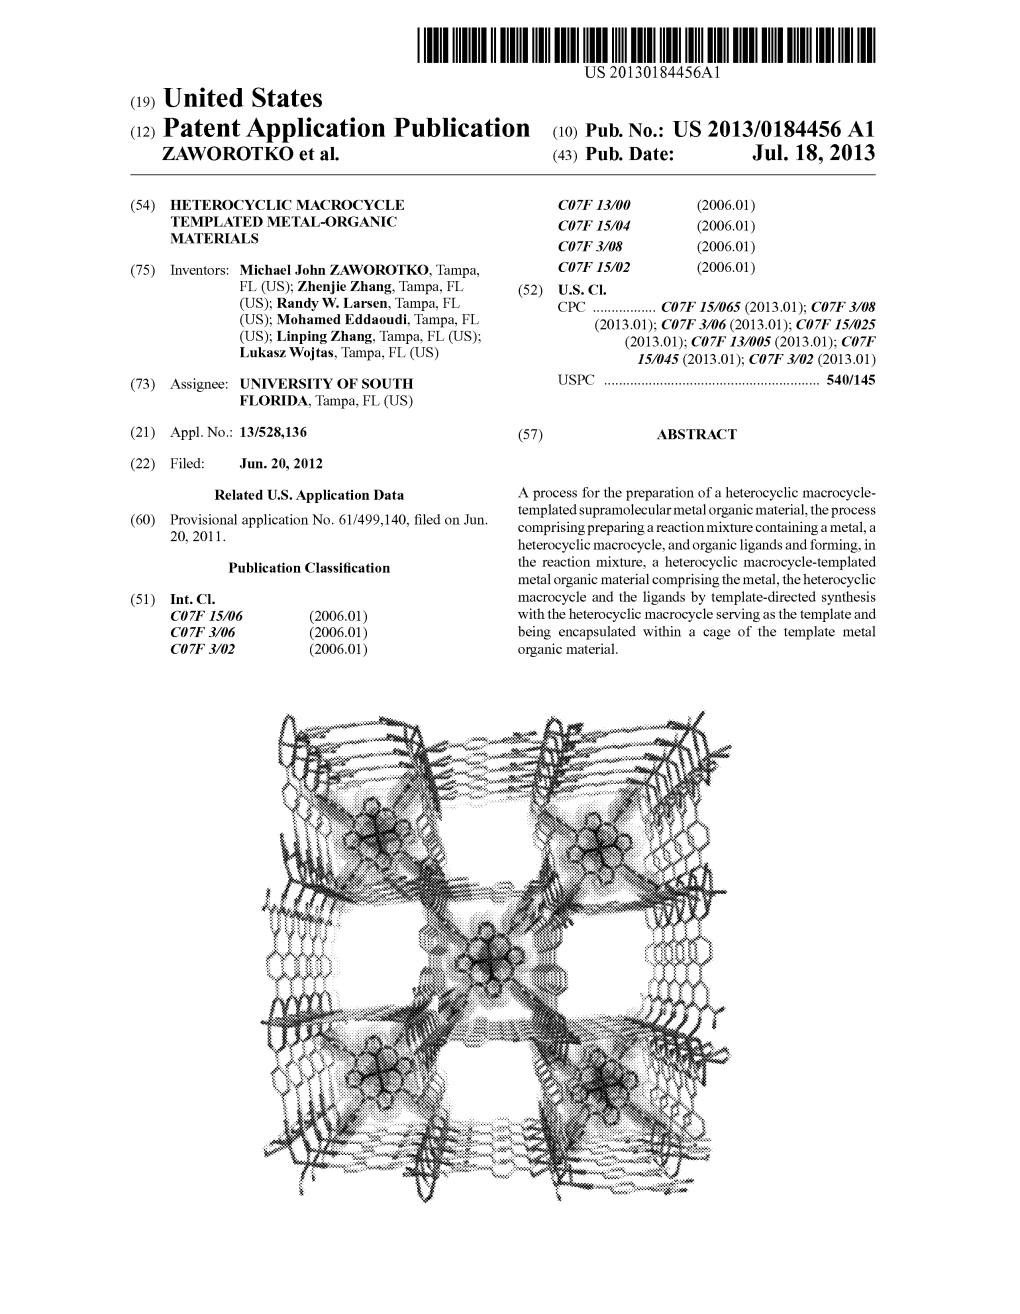 (12) Patent Application Publication (10) Pub. No.: US 2013/0184456A1 ZAWOROTKO Et Al